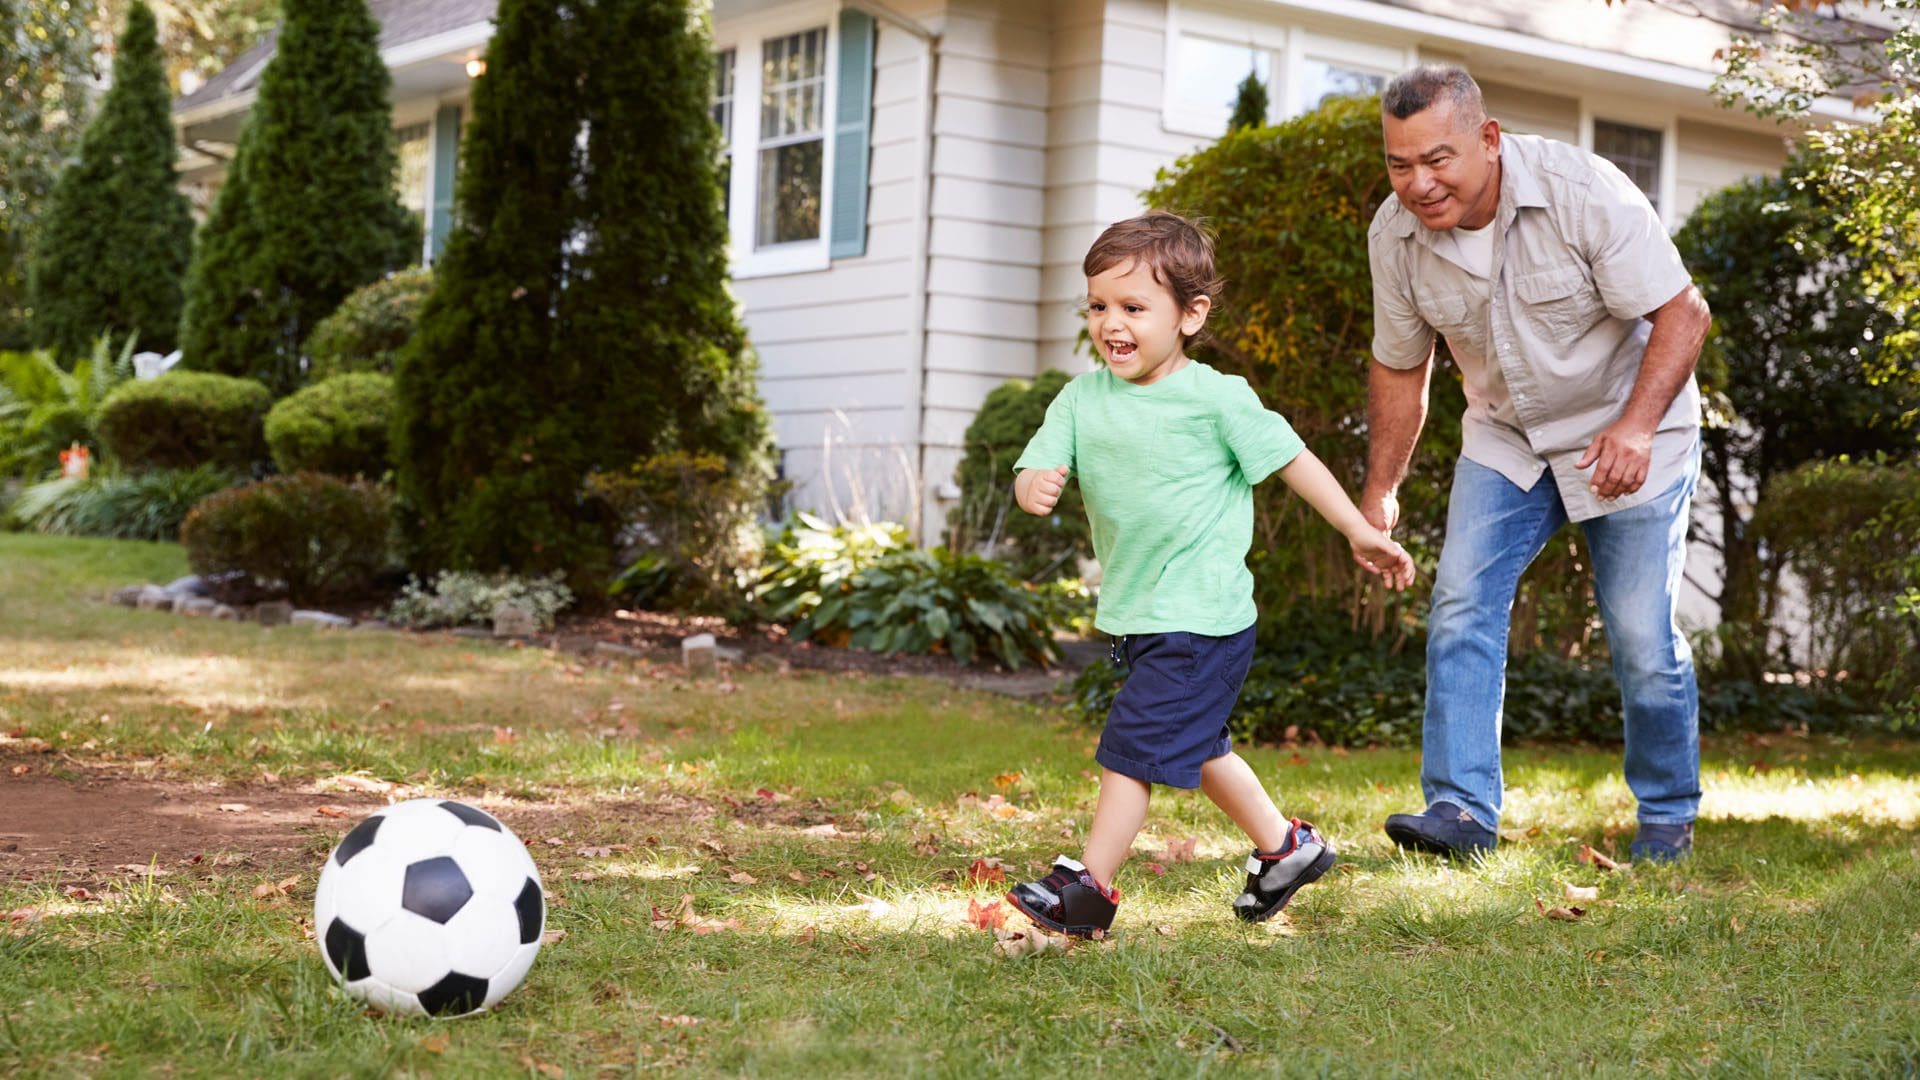 Дедушка играет в футбол. Дед играет с внуком в футбол. Дедушка играет в футбол с внуком. Дедушка футболист. Дедушка играет с детьми в футбол.